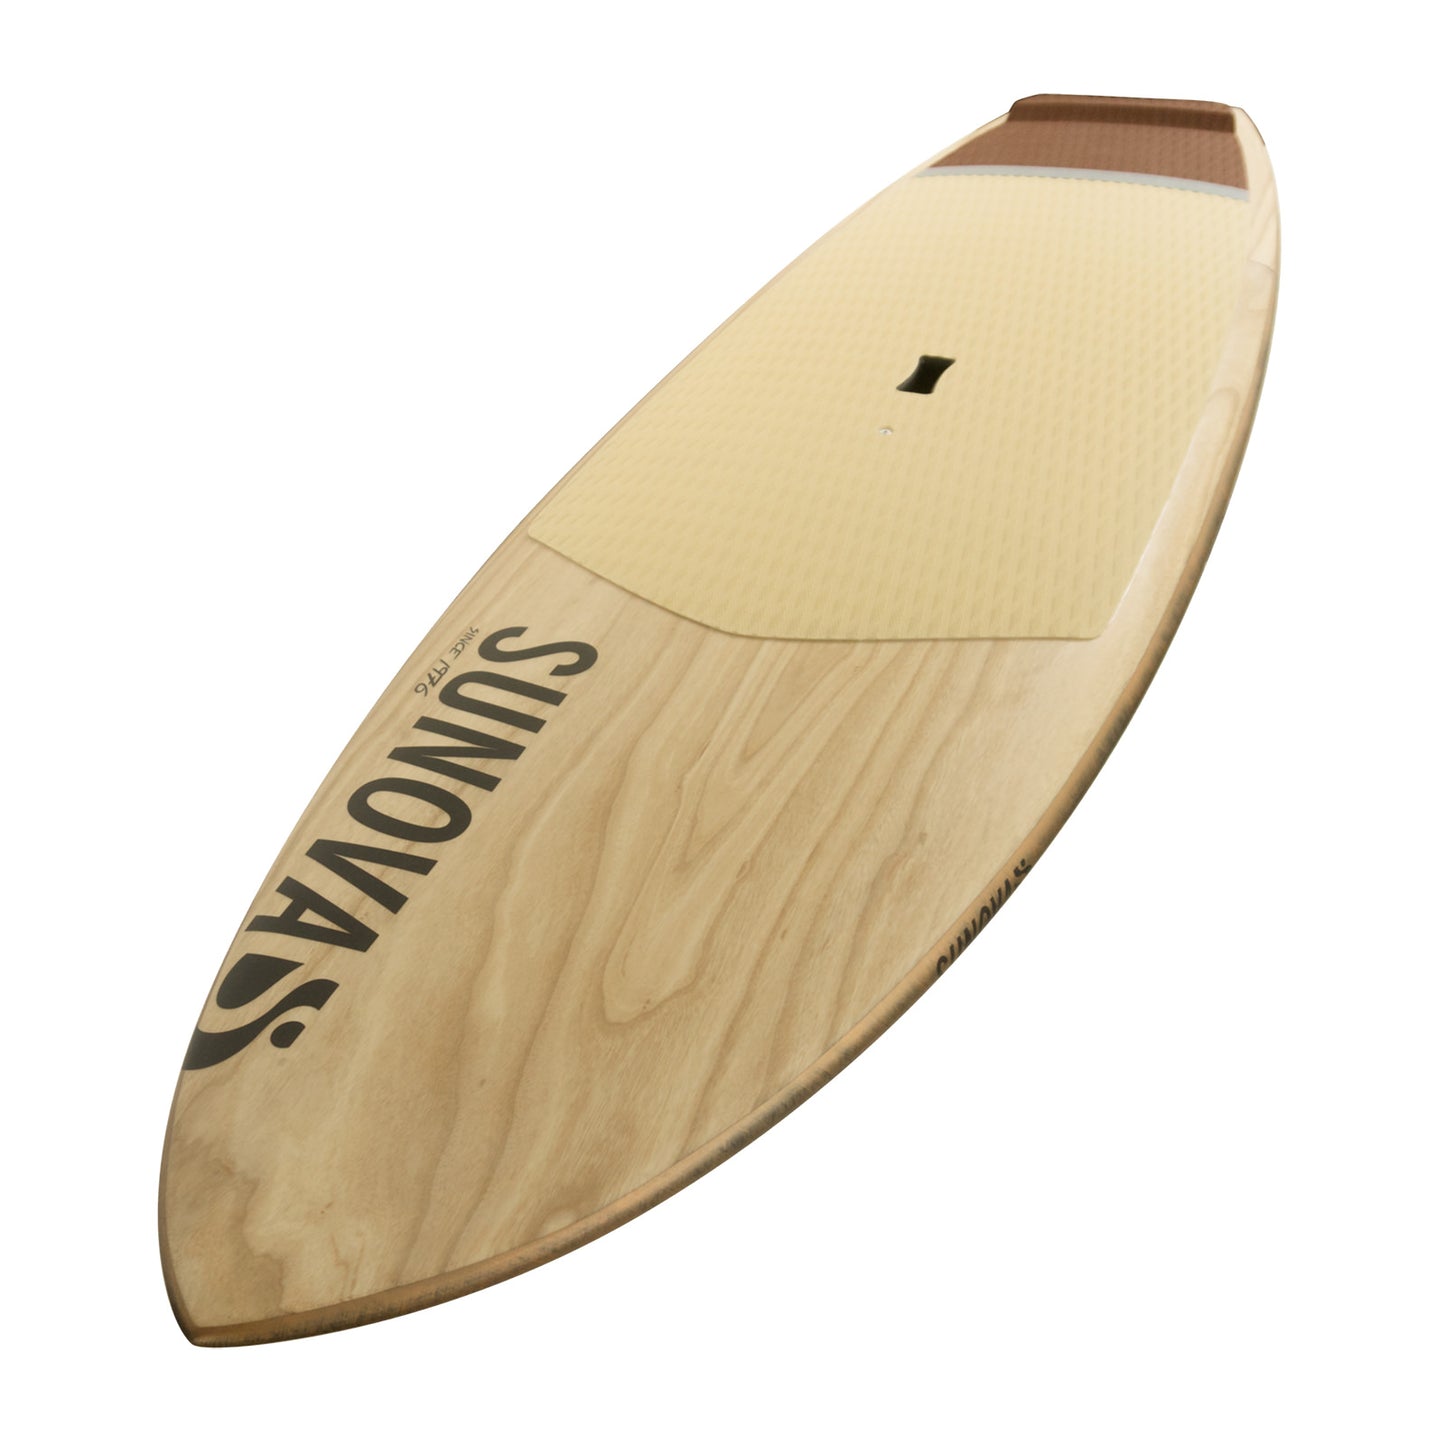 Perspektivische Ansicht des Sunova Skate Wave SUP Board in der TR3 Bauweise.